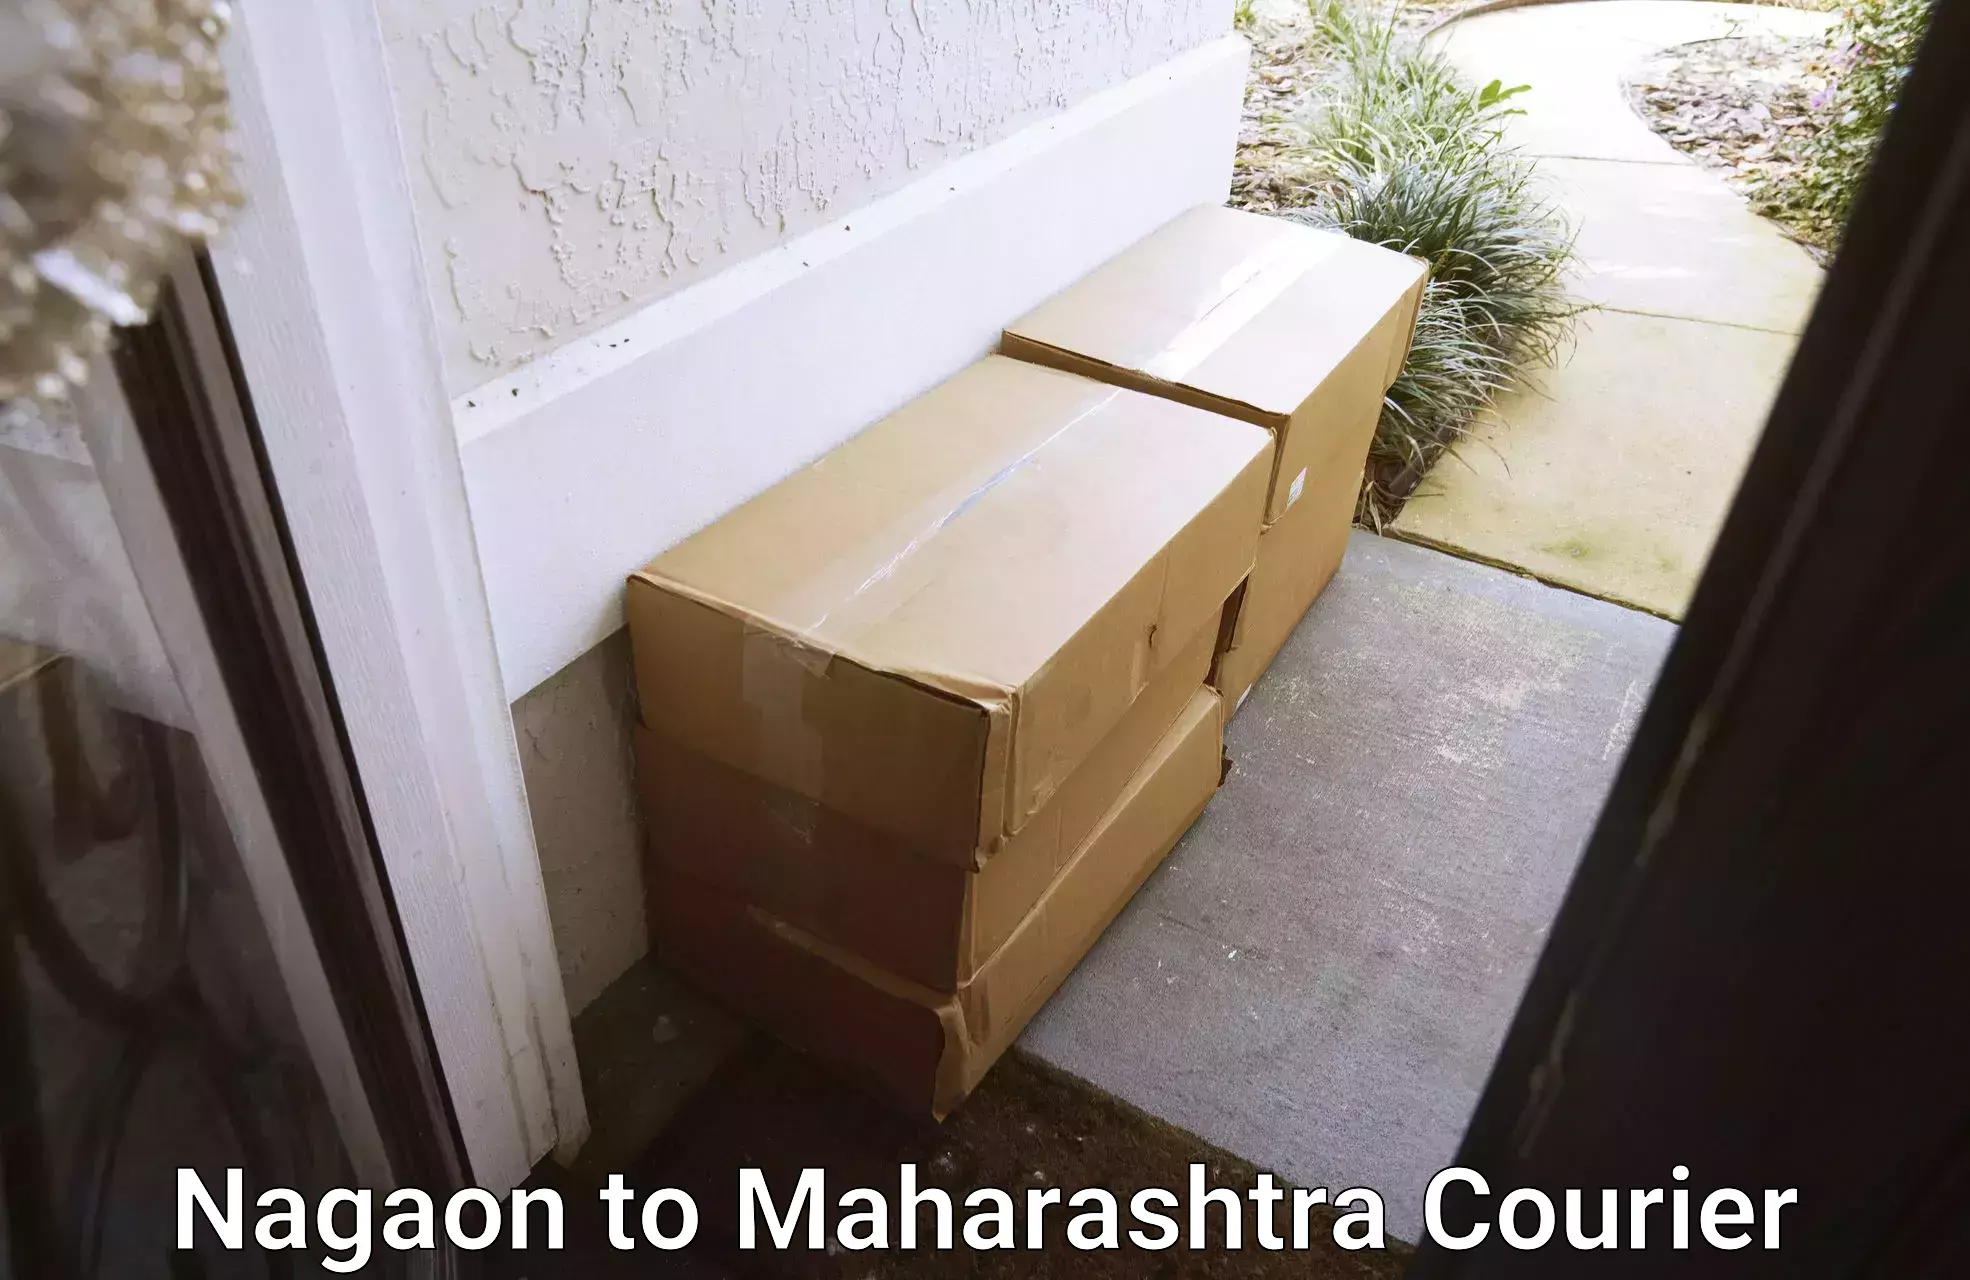 Courier service efficiency Nagaon to Maharashtra